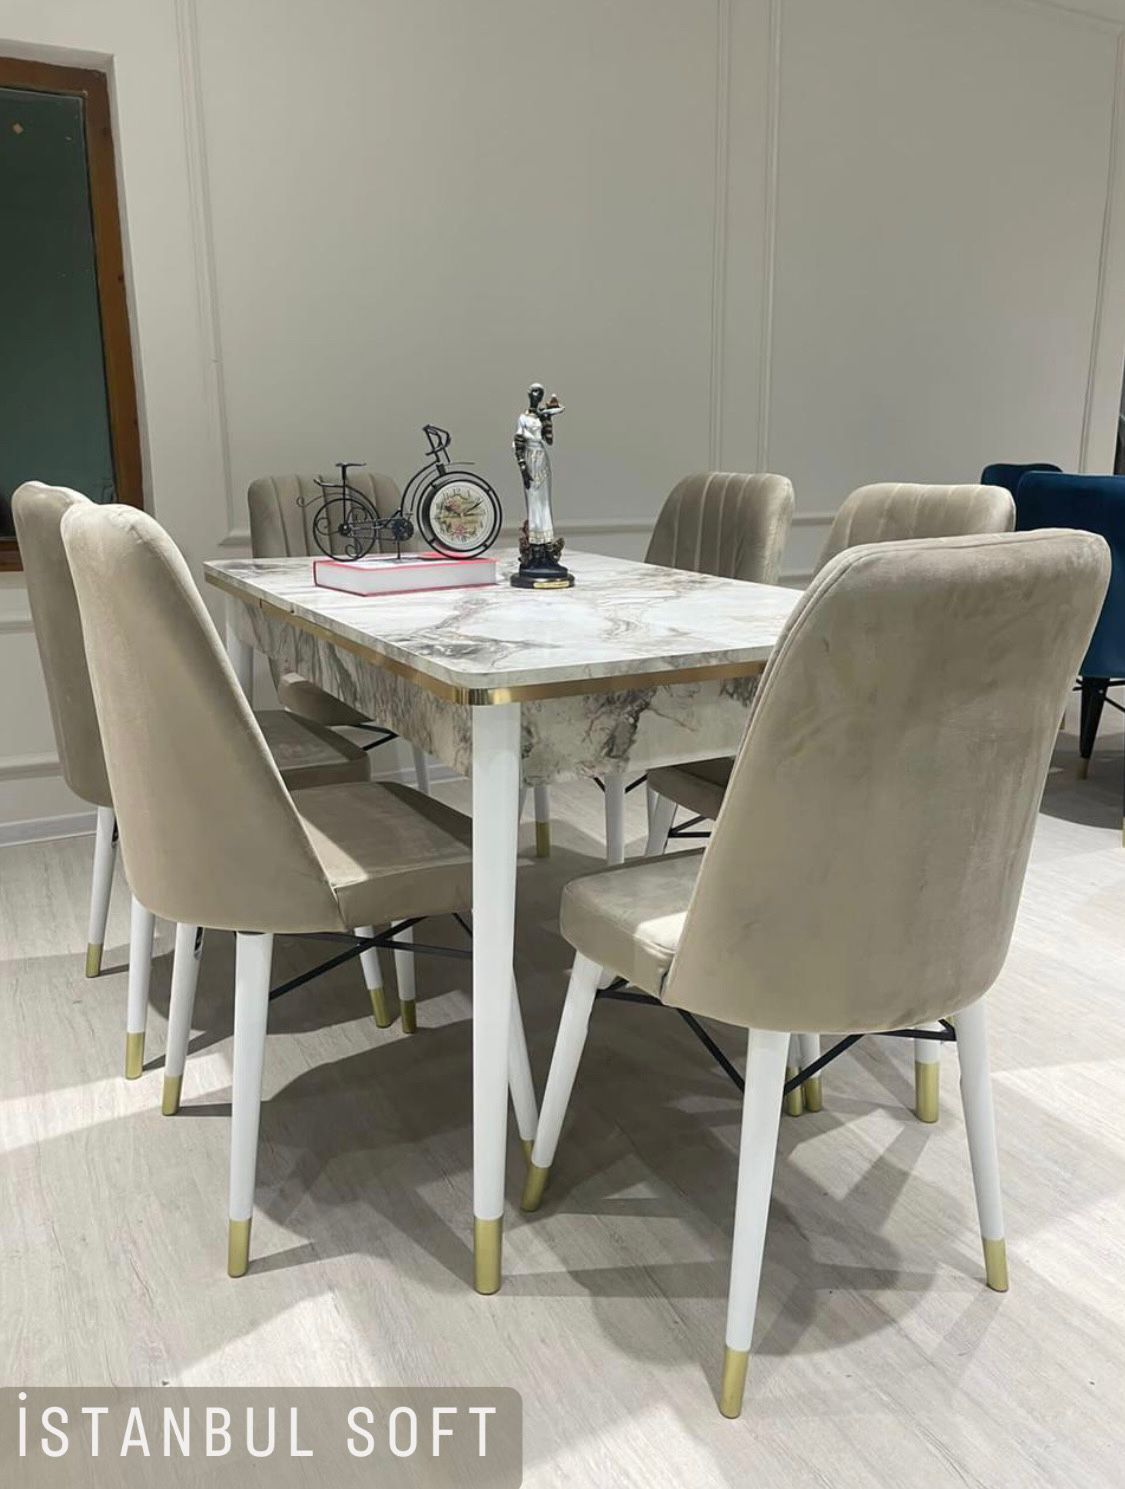 Кухонный стол и стулья Производства Турция Мебель со Склада